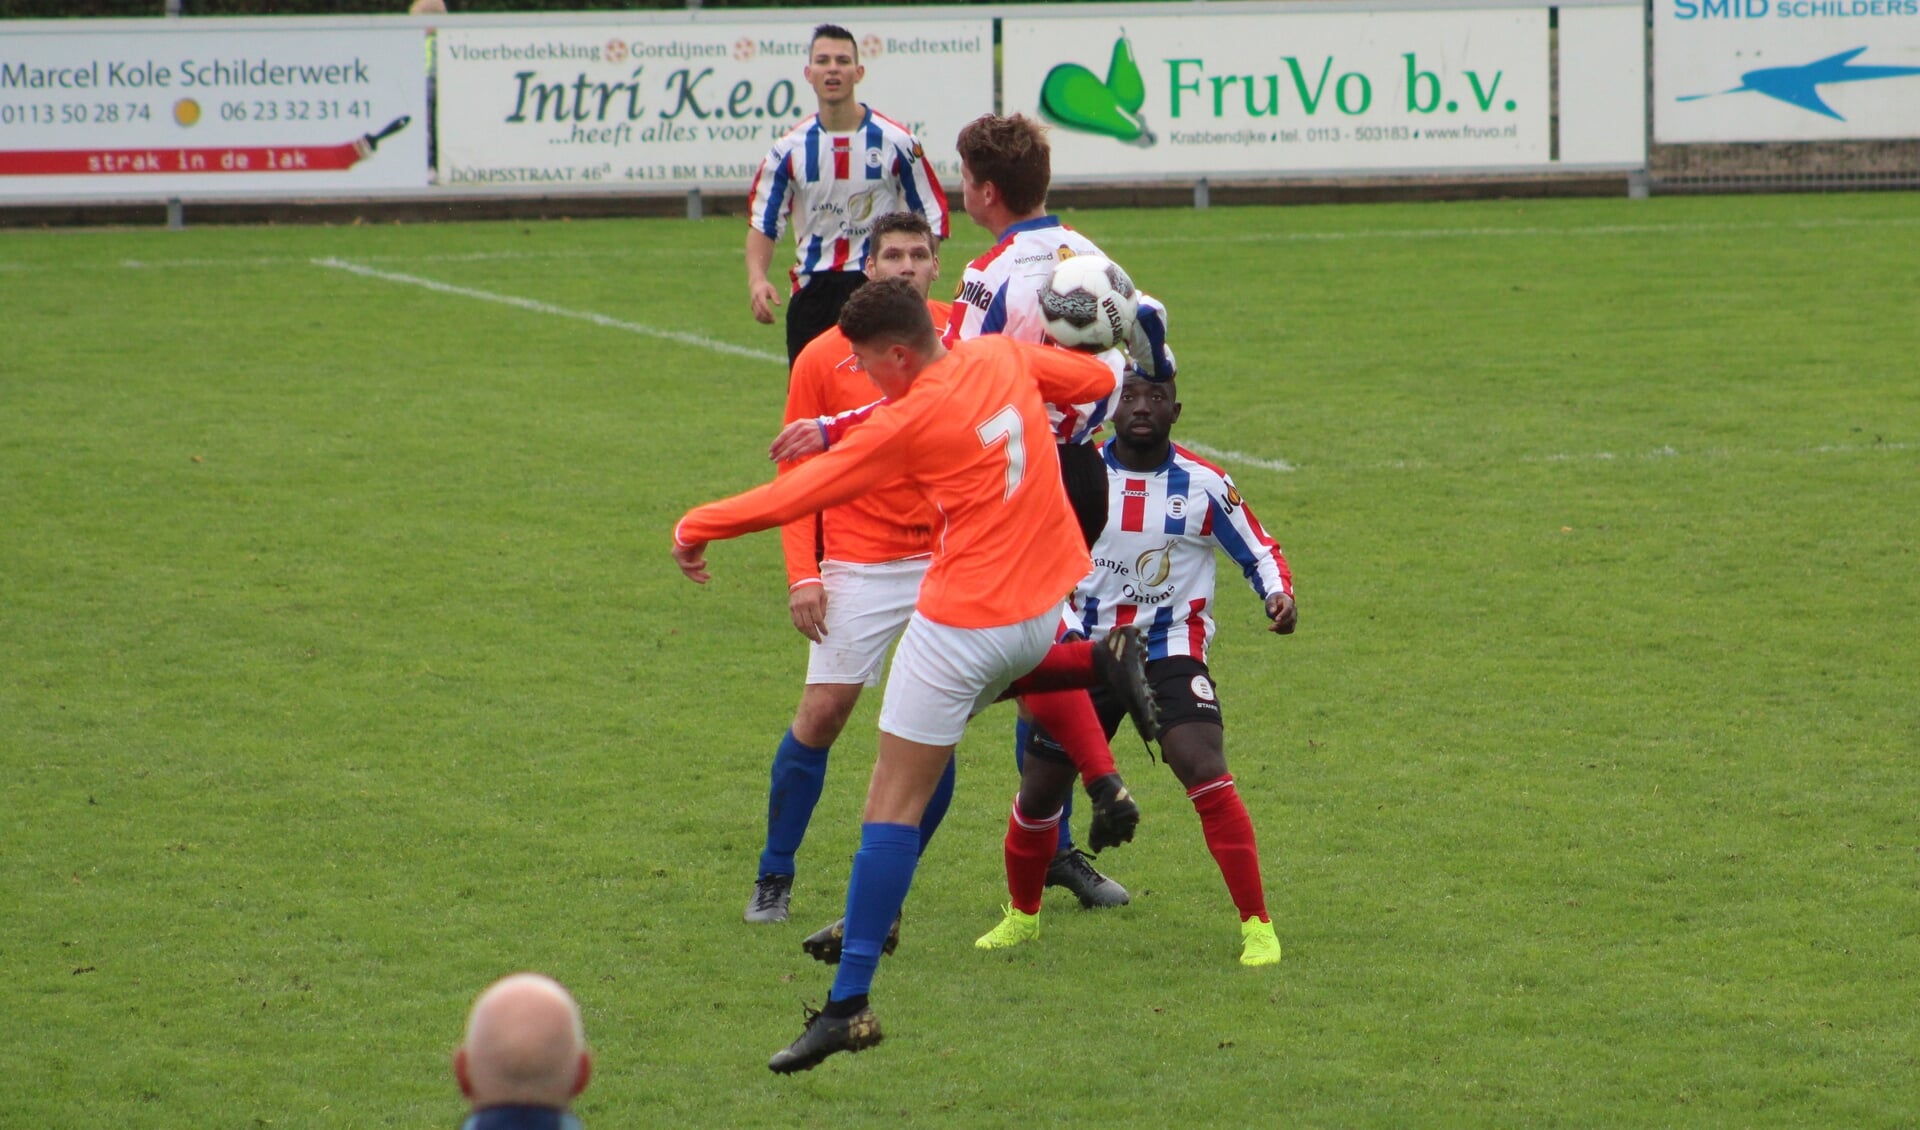 Jeroen Sent (VV Krabbendijke) in duel met Emre Bardakci (SEOLTO). 